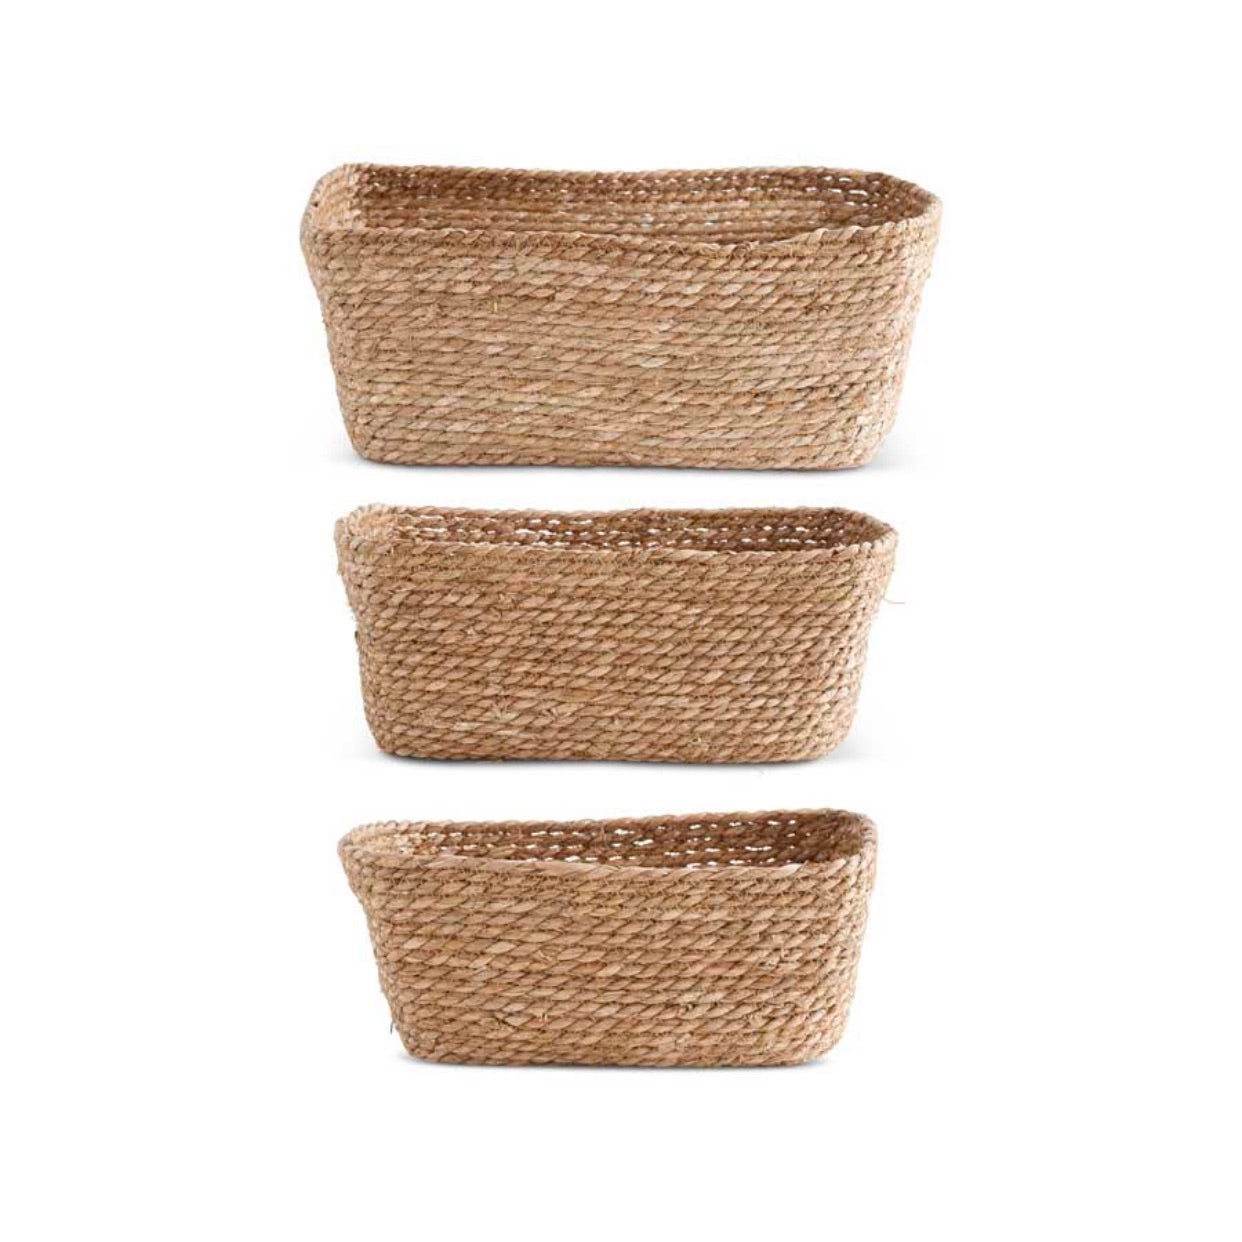 Rectangular Grass Storage Basket